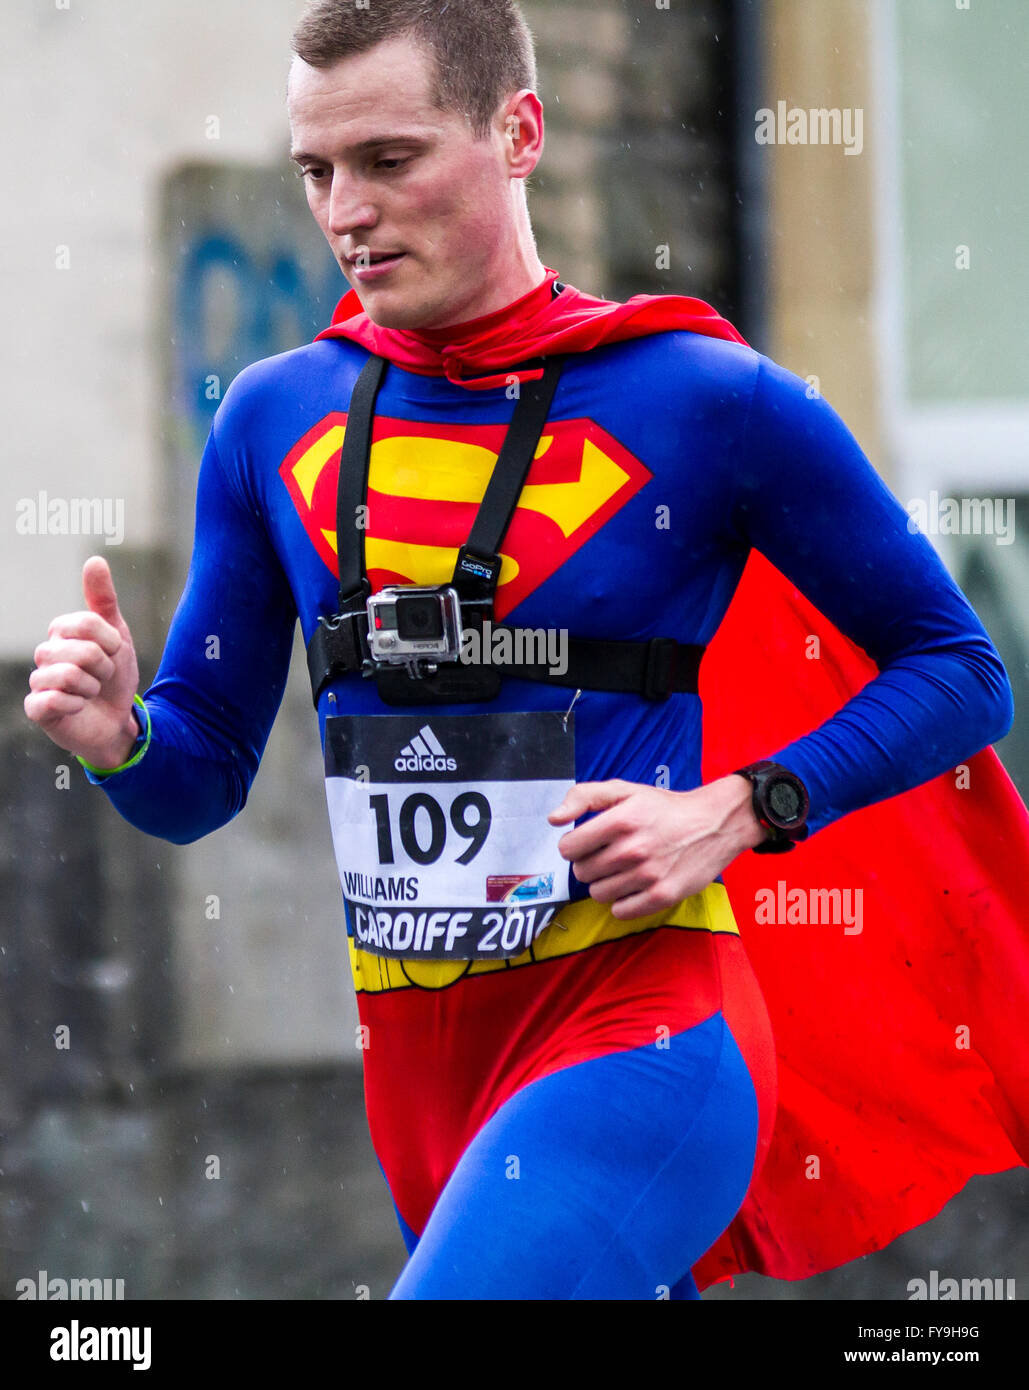 Oliver Williams atempting la media maratón más rápida vestido como un superhéroe récord mundial de Velindre Cancer Center en el mundo Foto de stock